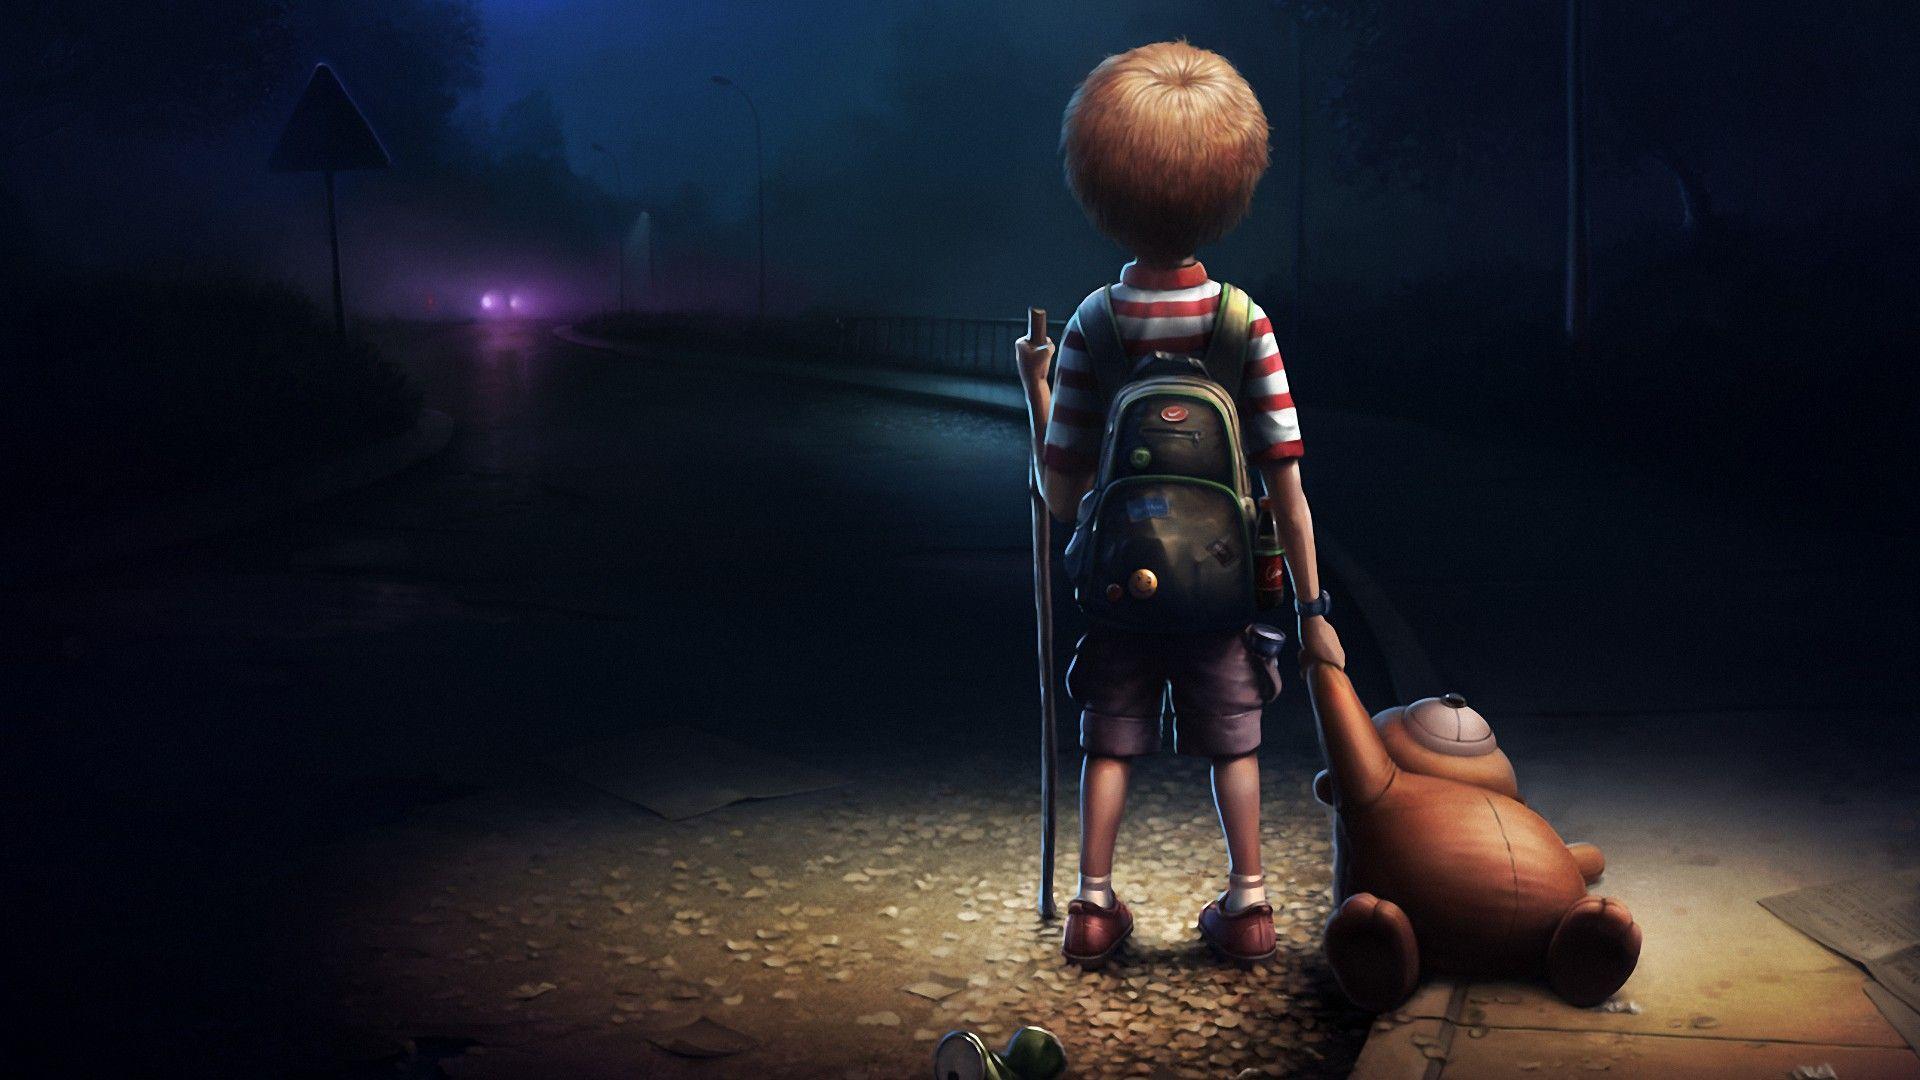 Cartoon Boy Alone In Dark Wallpaper HD 1080p For Desktop